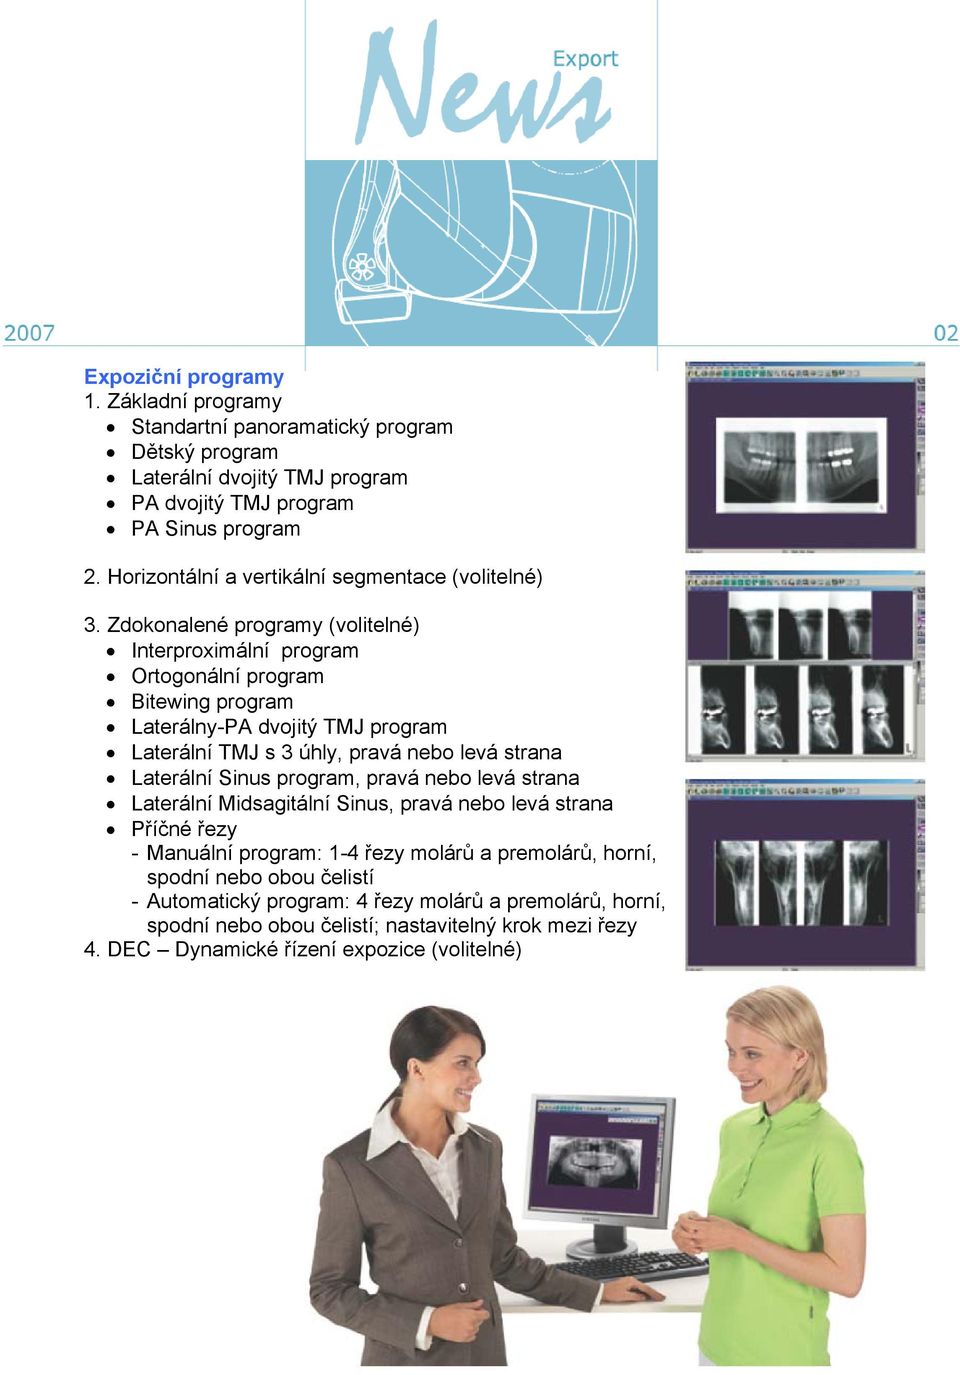 Zdokonalené programy (volitelné) Interproximální program Ortogonální program Bitewing program Laterálny-PA dvojitý TMJ program Laterální TMJ s 3 úhly, pravá nebo levá strana Laterální